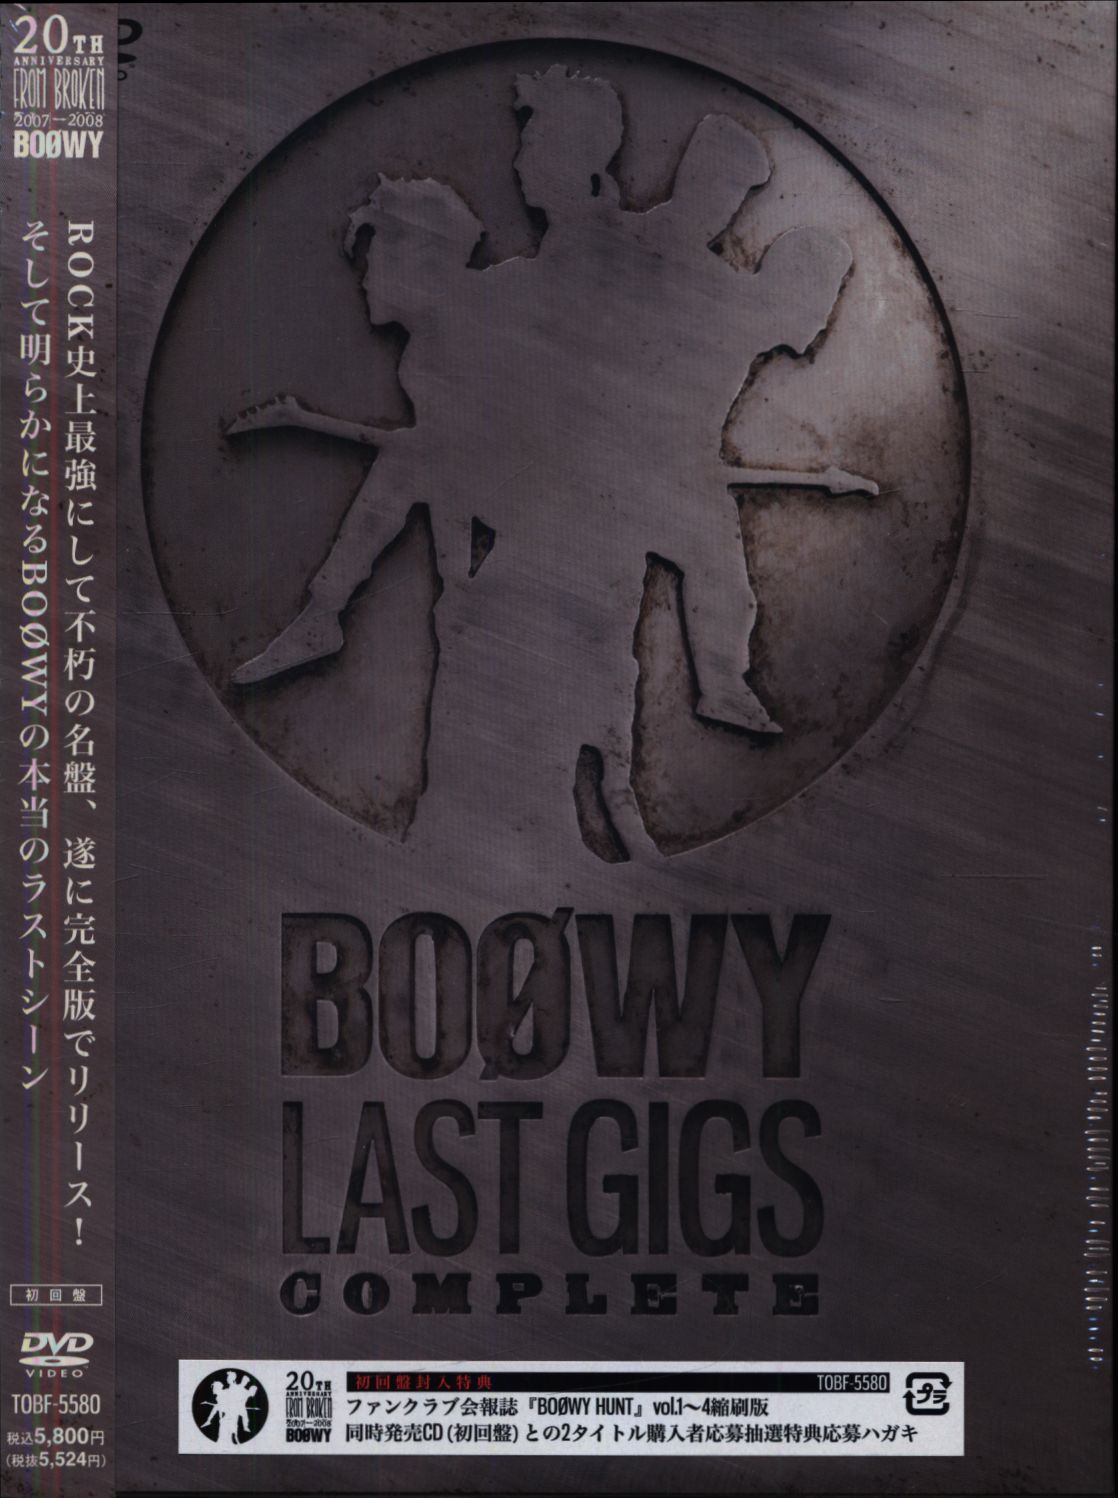 DVD BOOWY LAST GIGS - ブルーレイ